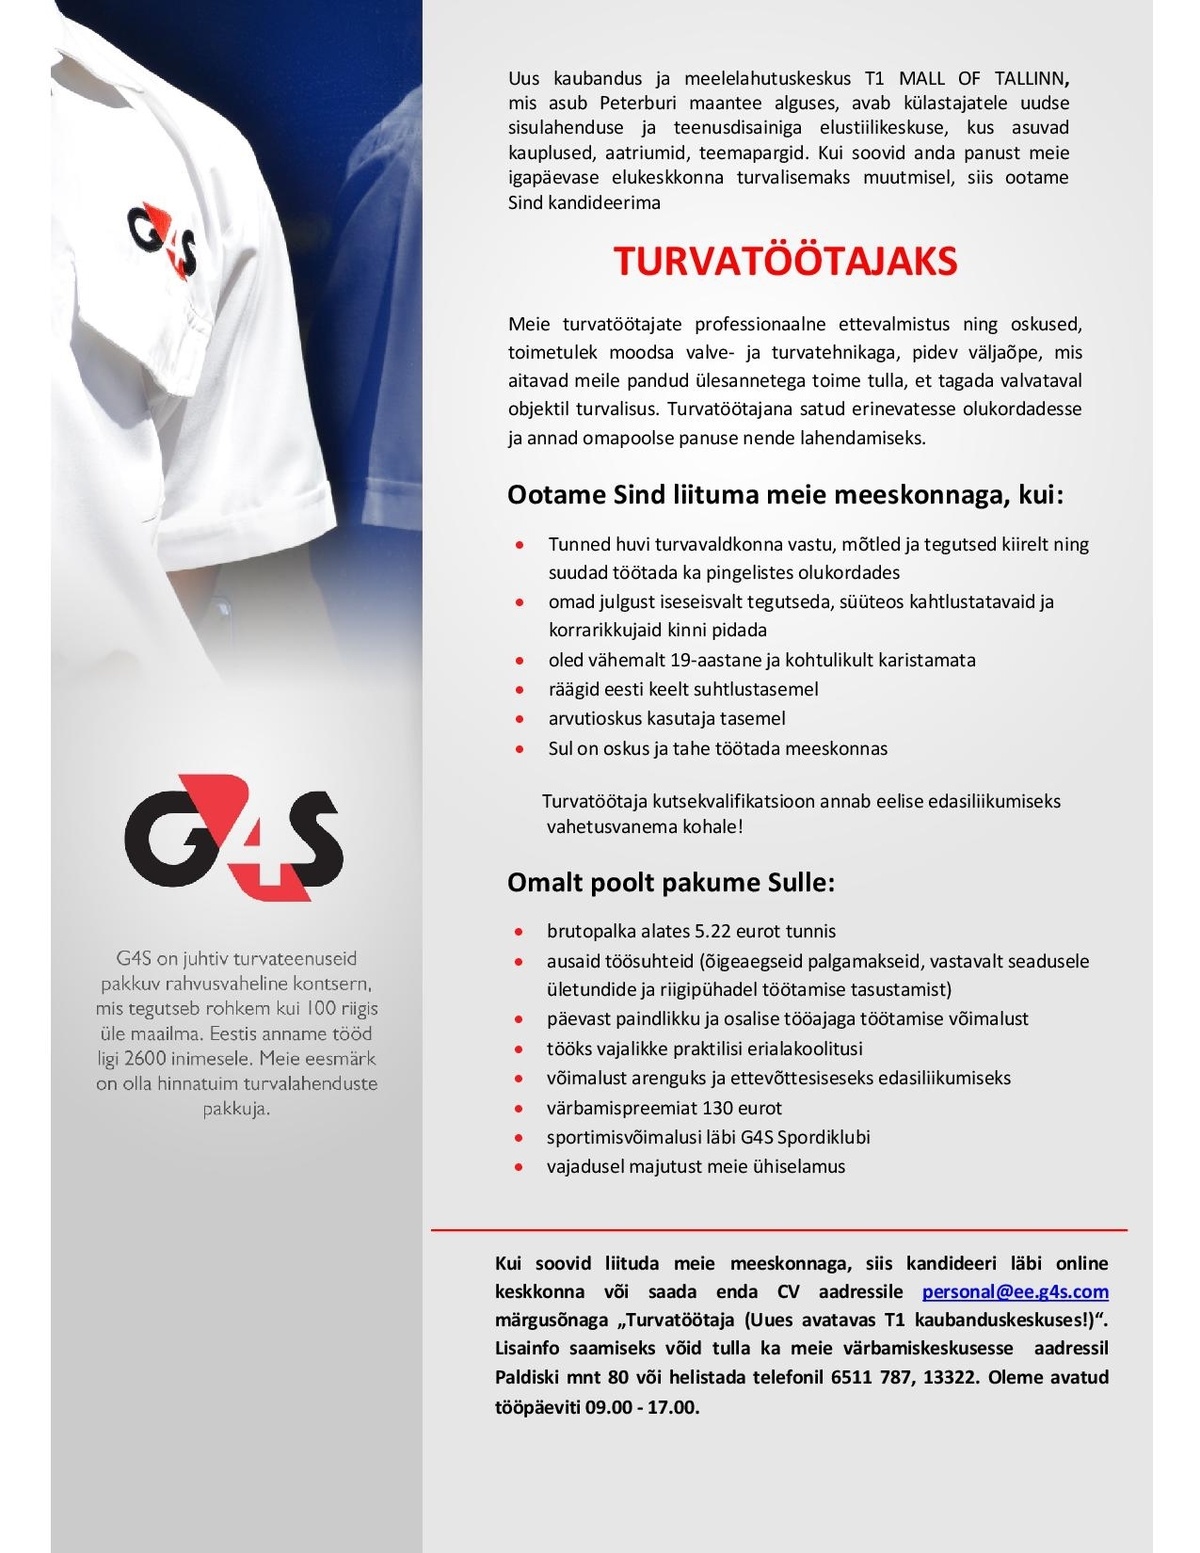 AS G4S Eesti Turvatöötaja (uues avatavas T1 kaubanduskeskuses), brutopalk alates 5.22 eurot tunnis